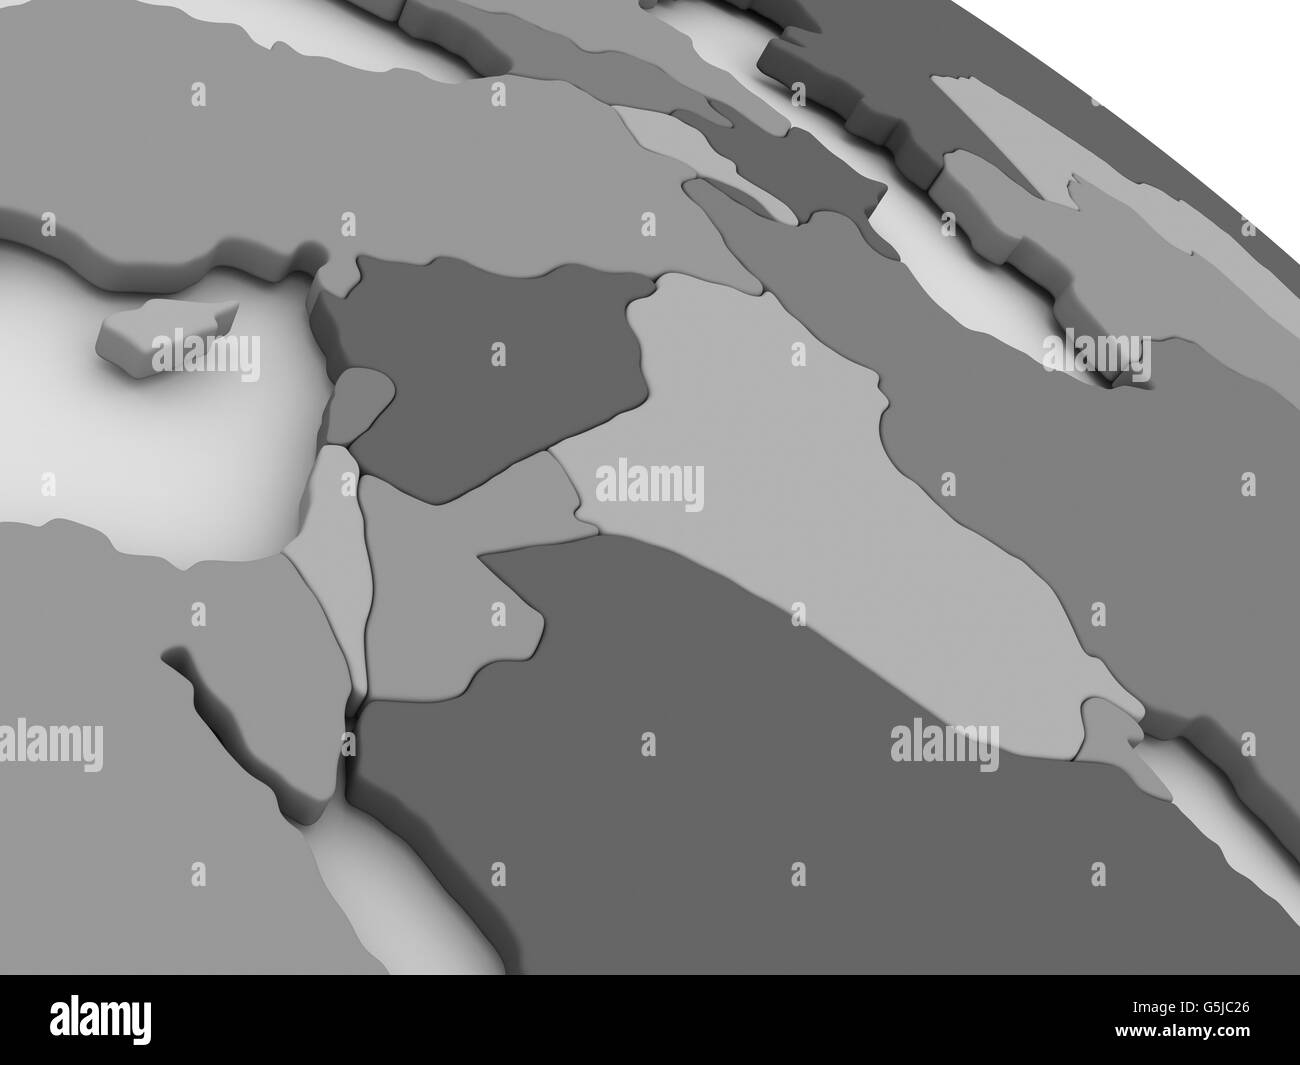 Karte von Israel, Libanon, Jordanien, Syrien und Irak Region auf graue Modell der Erde. 3D illustration Stockfoto